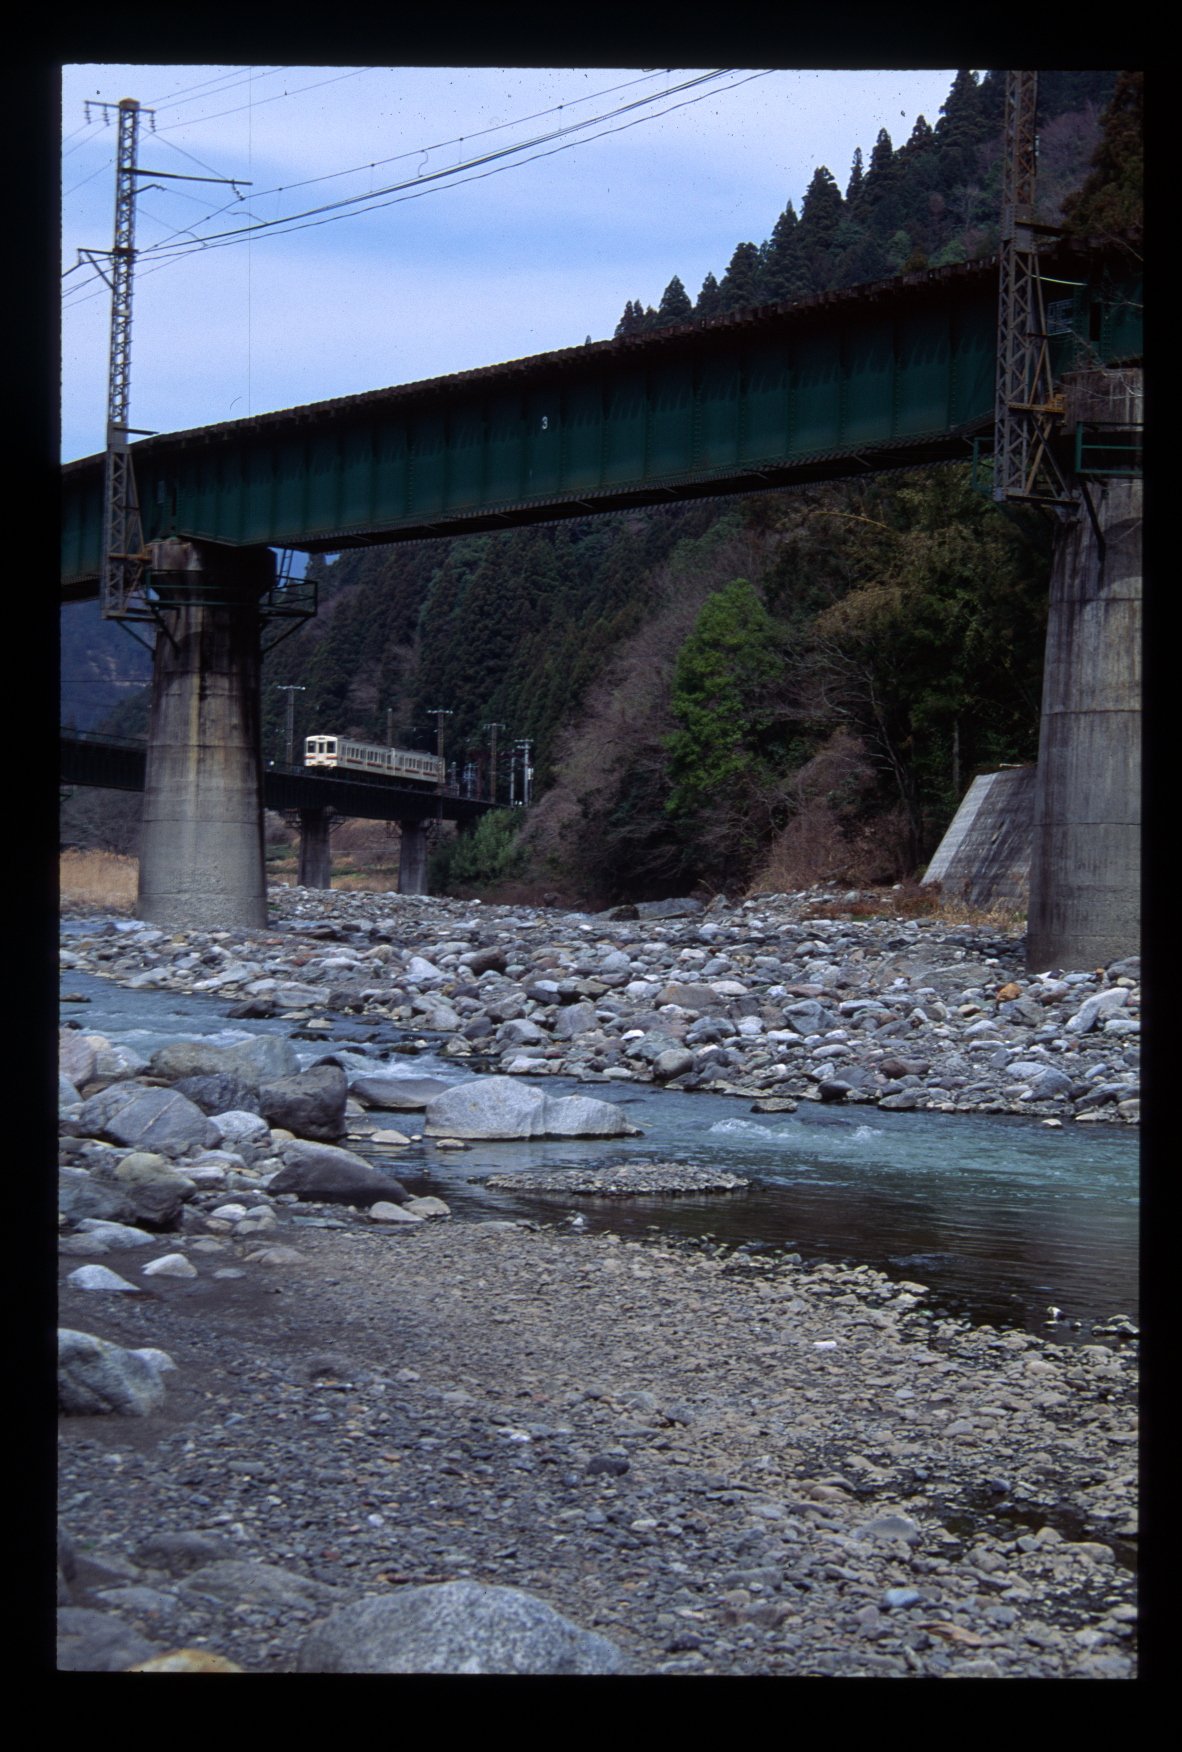 Bra Give 飯田線 第六水窪川橋梁とか 94年撮影だって たぶん あーる の影響でいったんだと思う